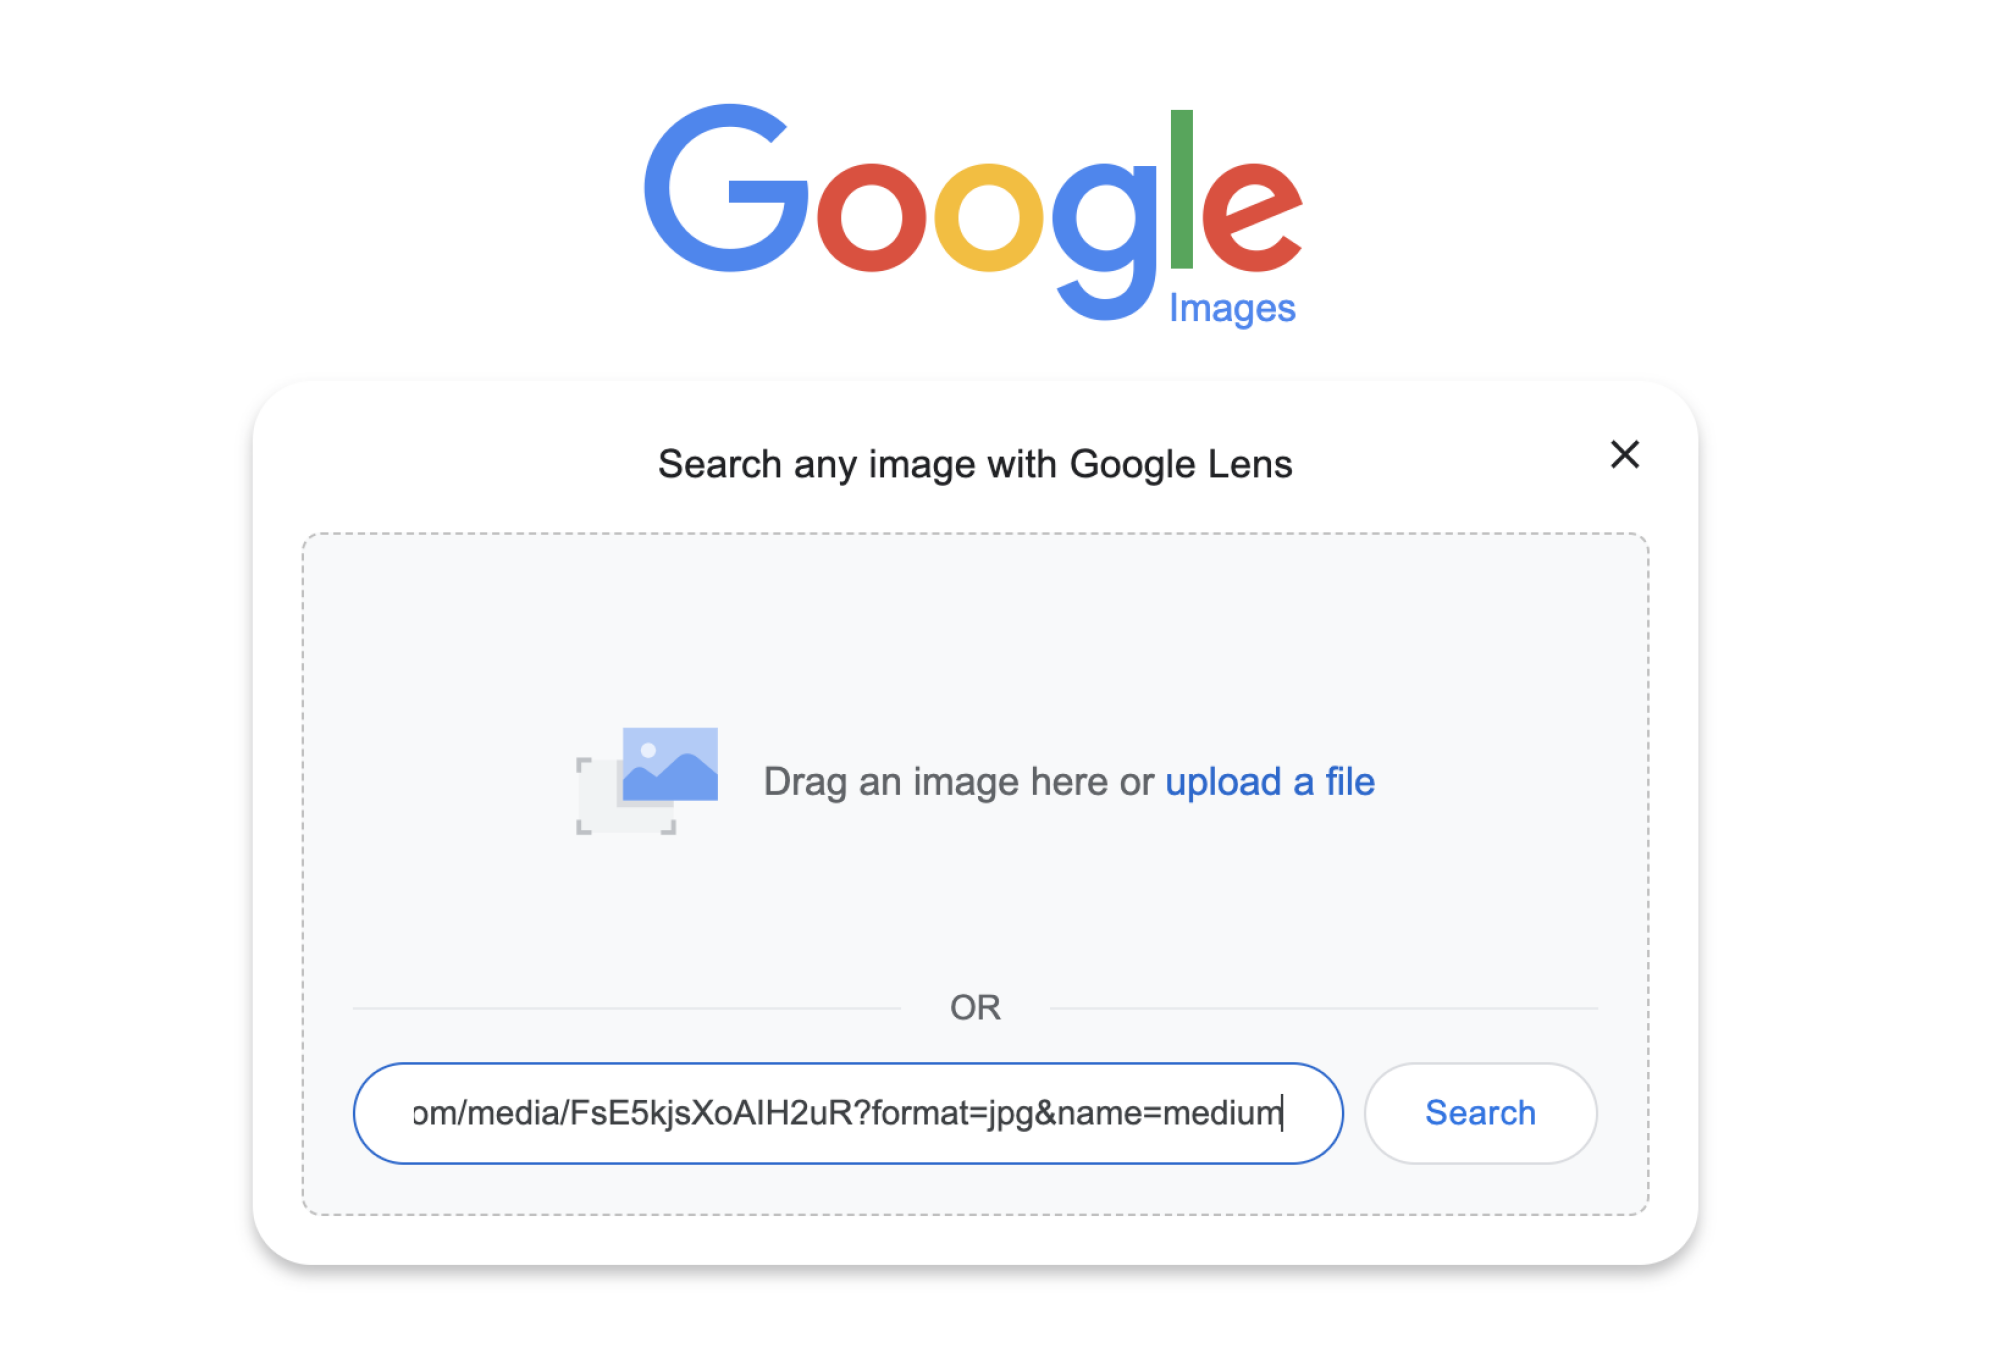 Une capture d'écran de images.google montrant un lien collé dans la section de téléchargement de photos.